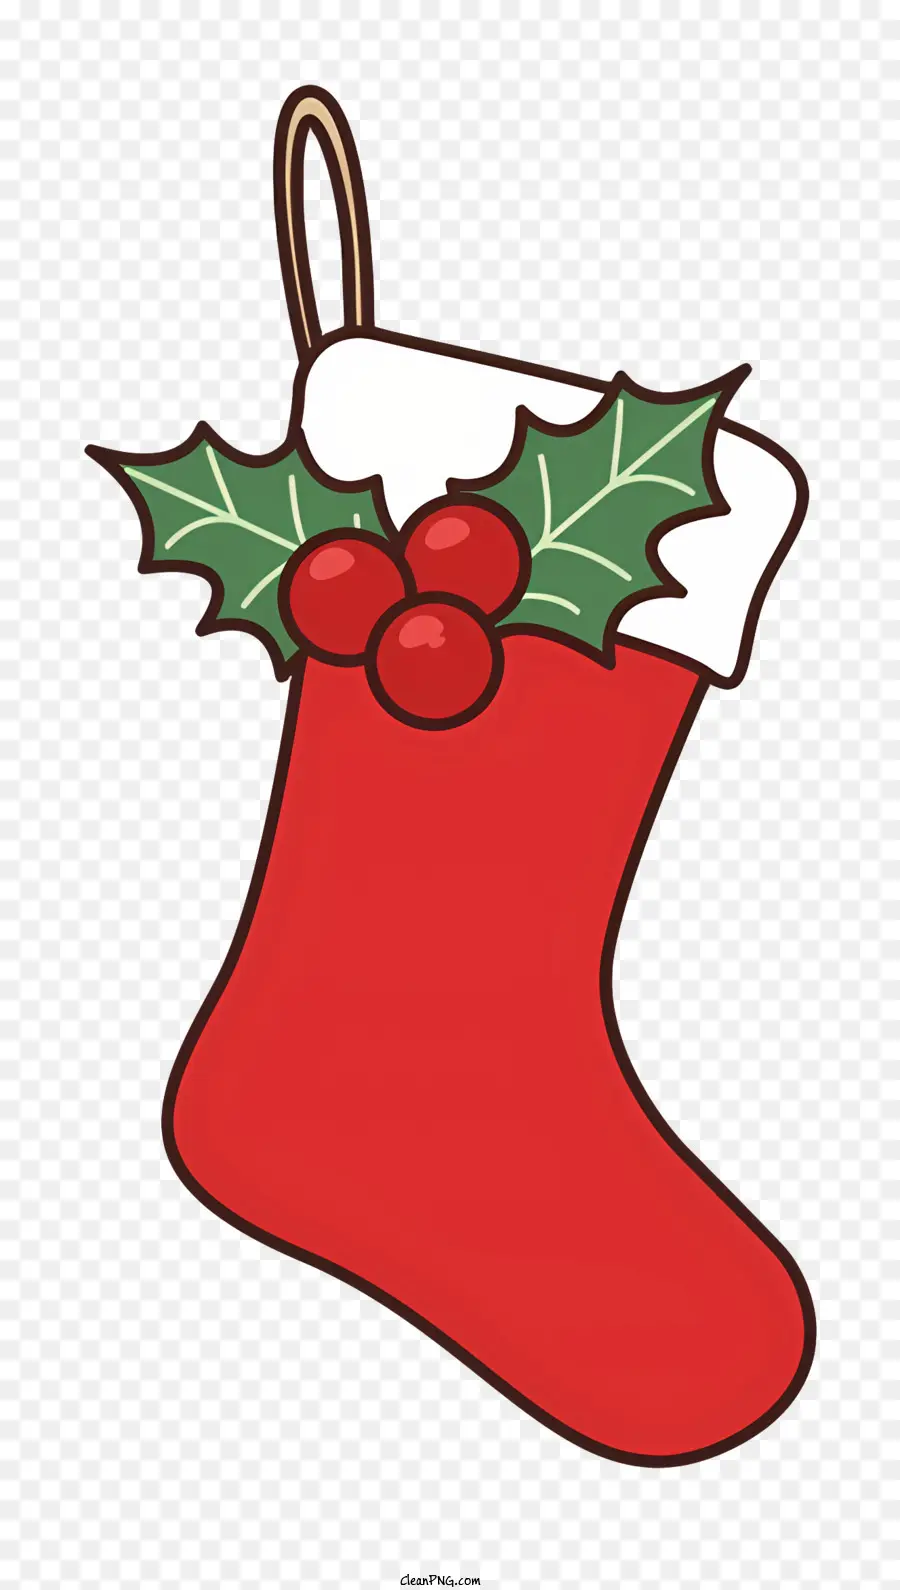 Weihnachts Socke - Rote Socke mit Holly Bush und Bogen